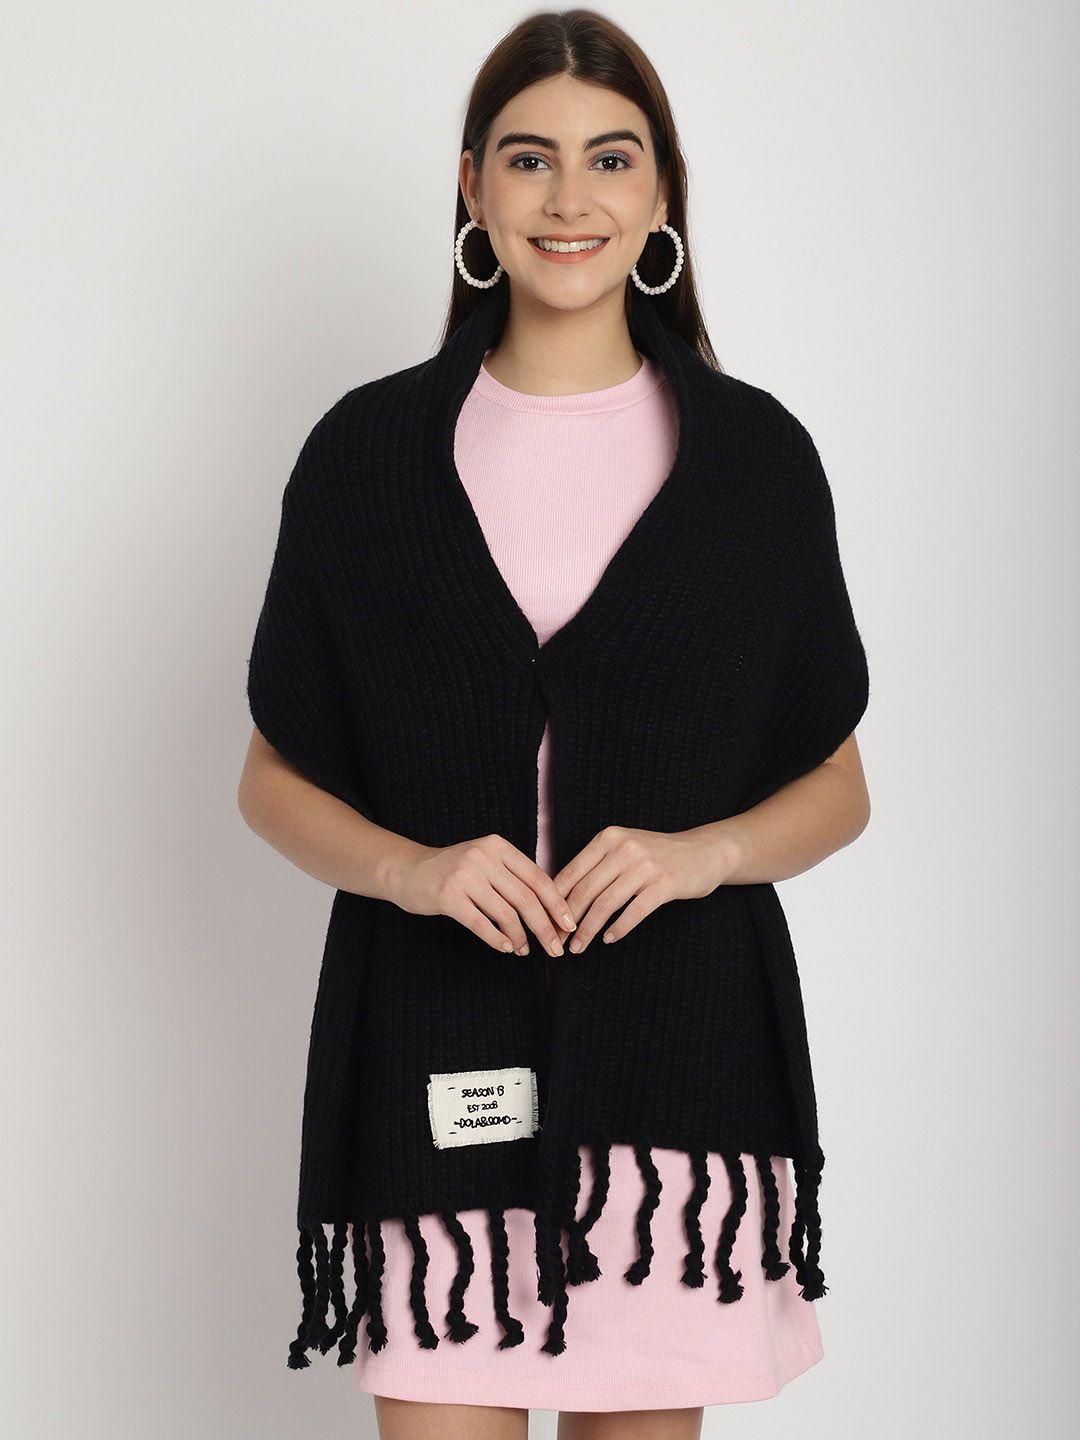 ellis knitted acrylic shrug